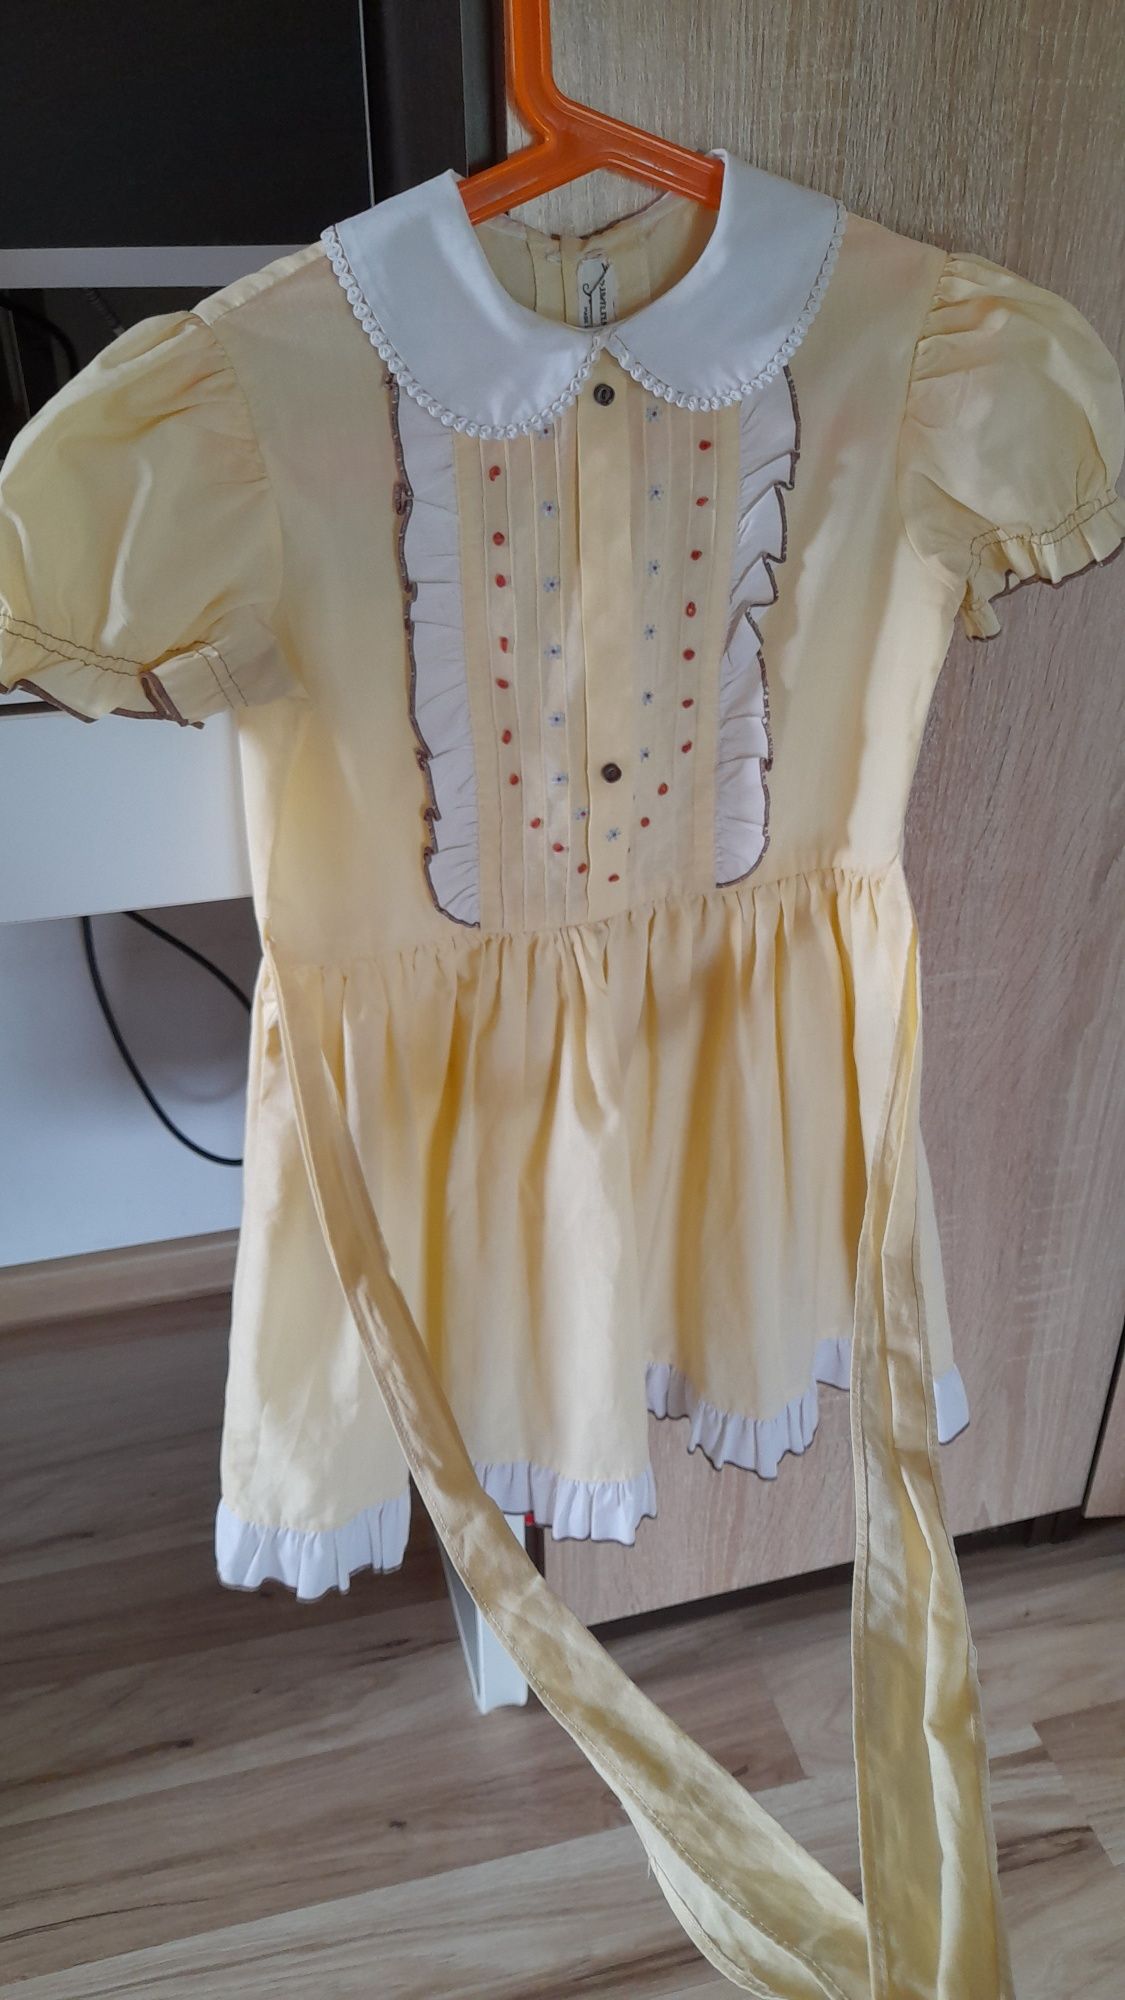 rochie fetita de 6-7 ani culoare galben impecabila rochita printesa